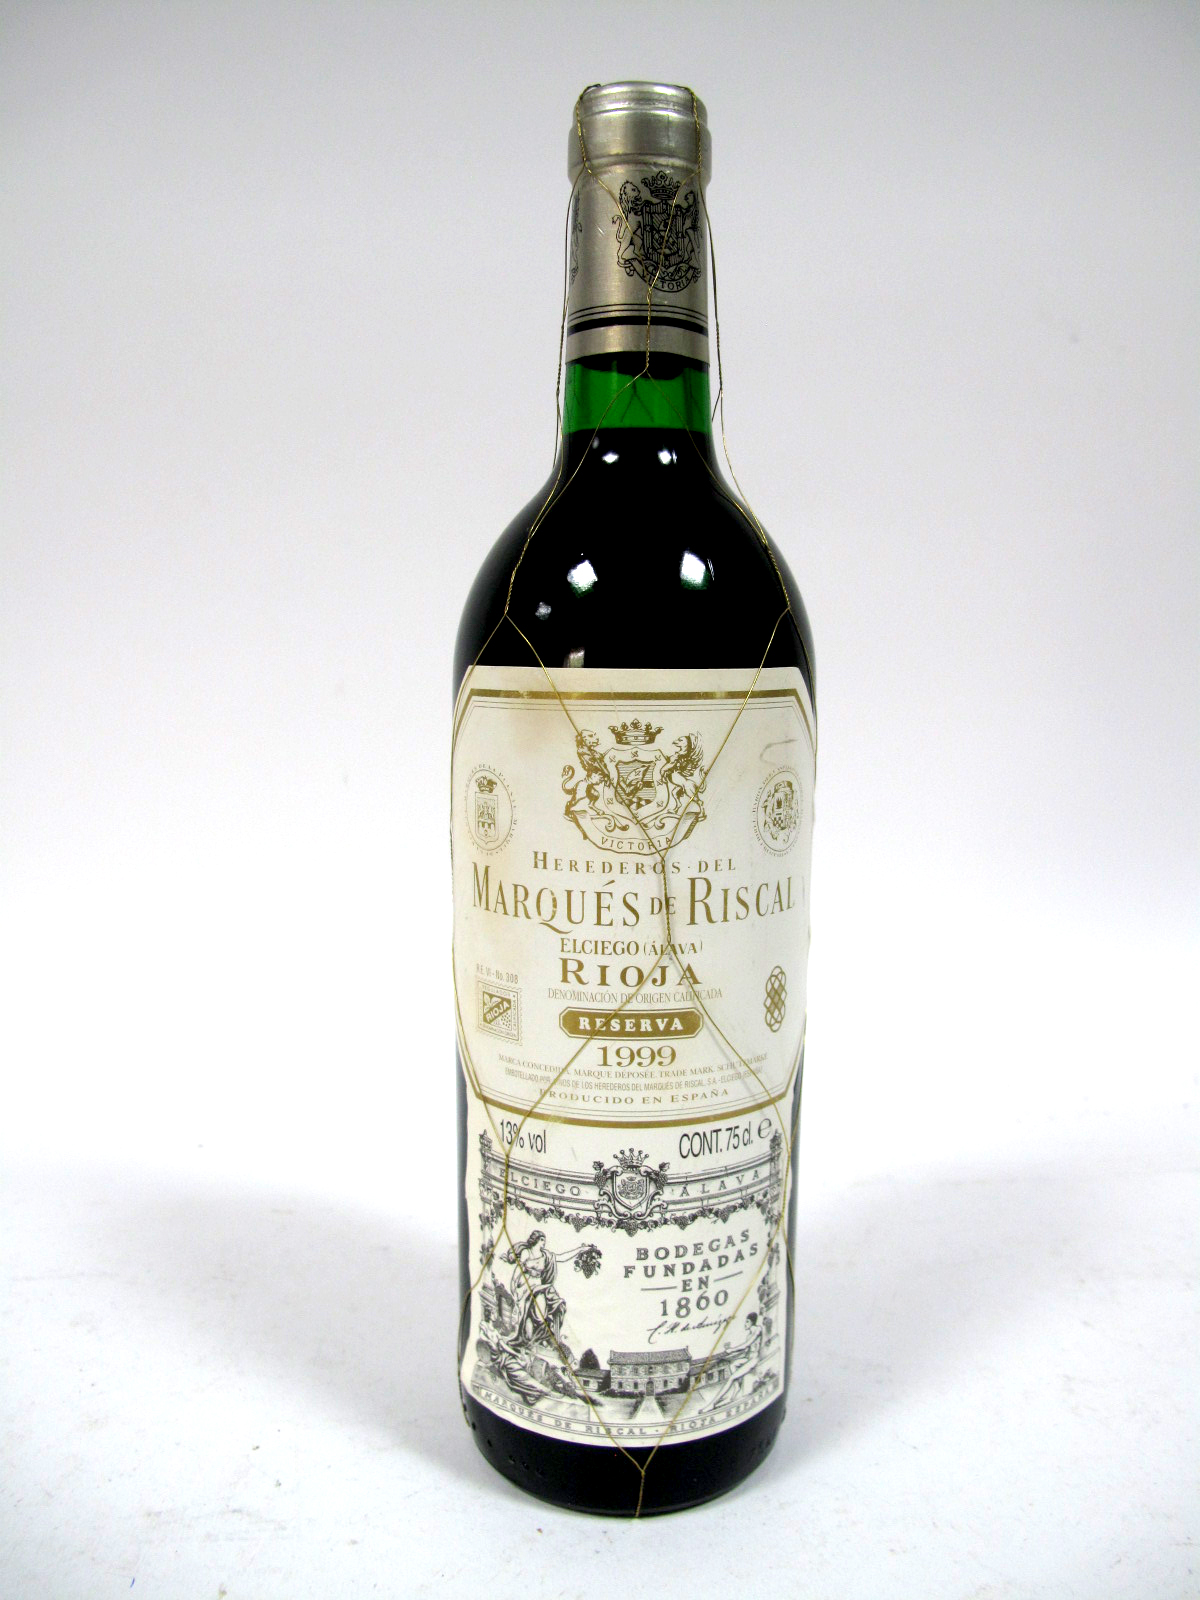 Wine - Herederos del Marques de Riscal Rioja Reserva 1999, no. 726800, 75cl, 13% Vol.